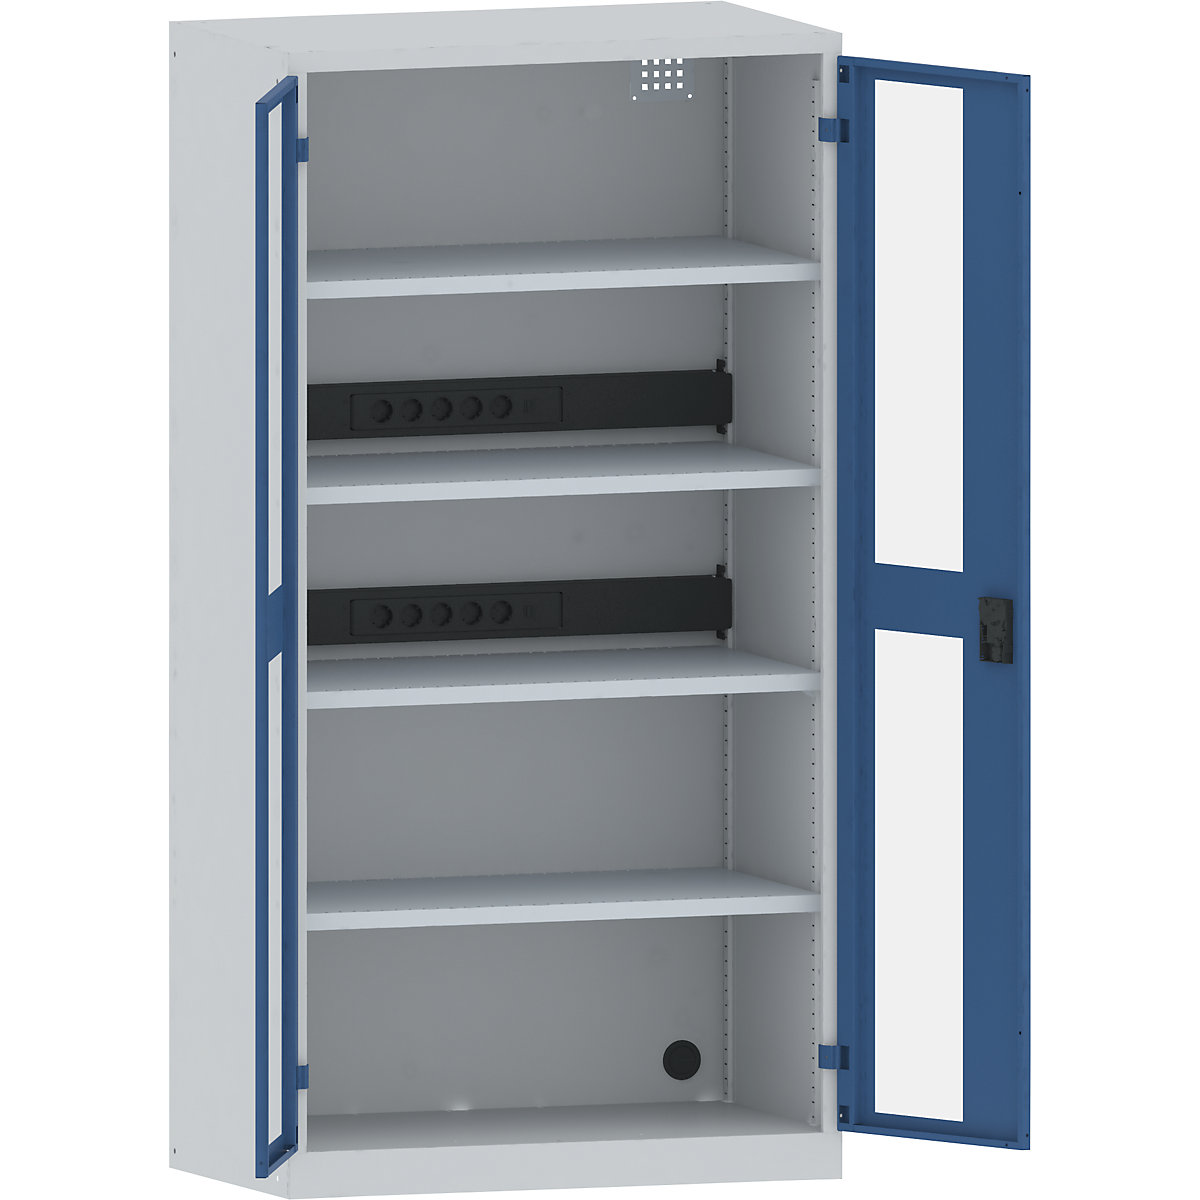 LISTA – Skříň pro nabíjení akumulátorů, 4 police, dveře s okénkem, 2 zásuvkové lišty na zadní straně, šedá / modrá